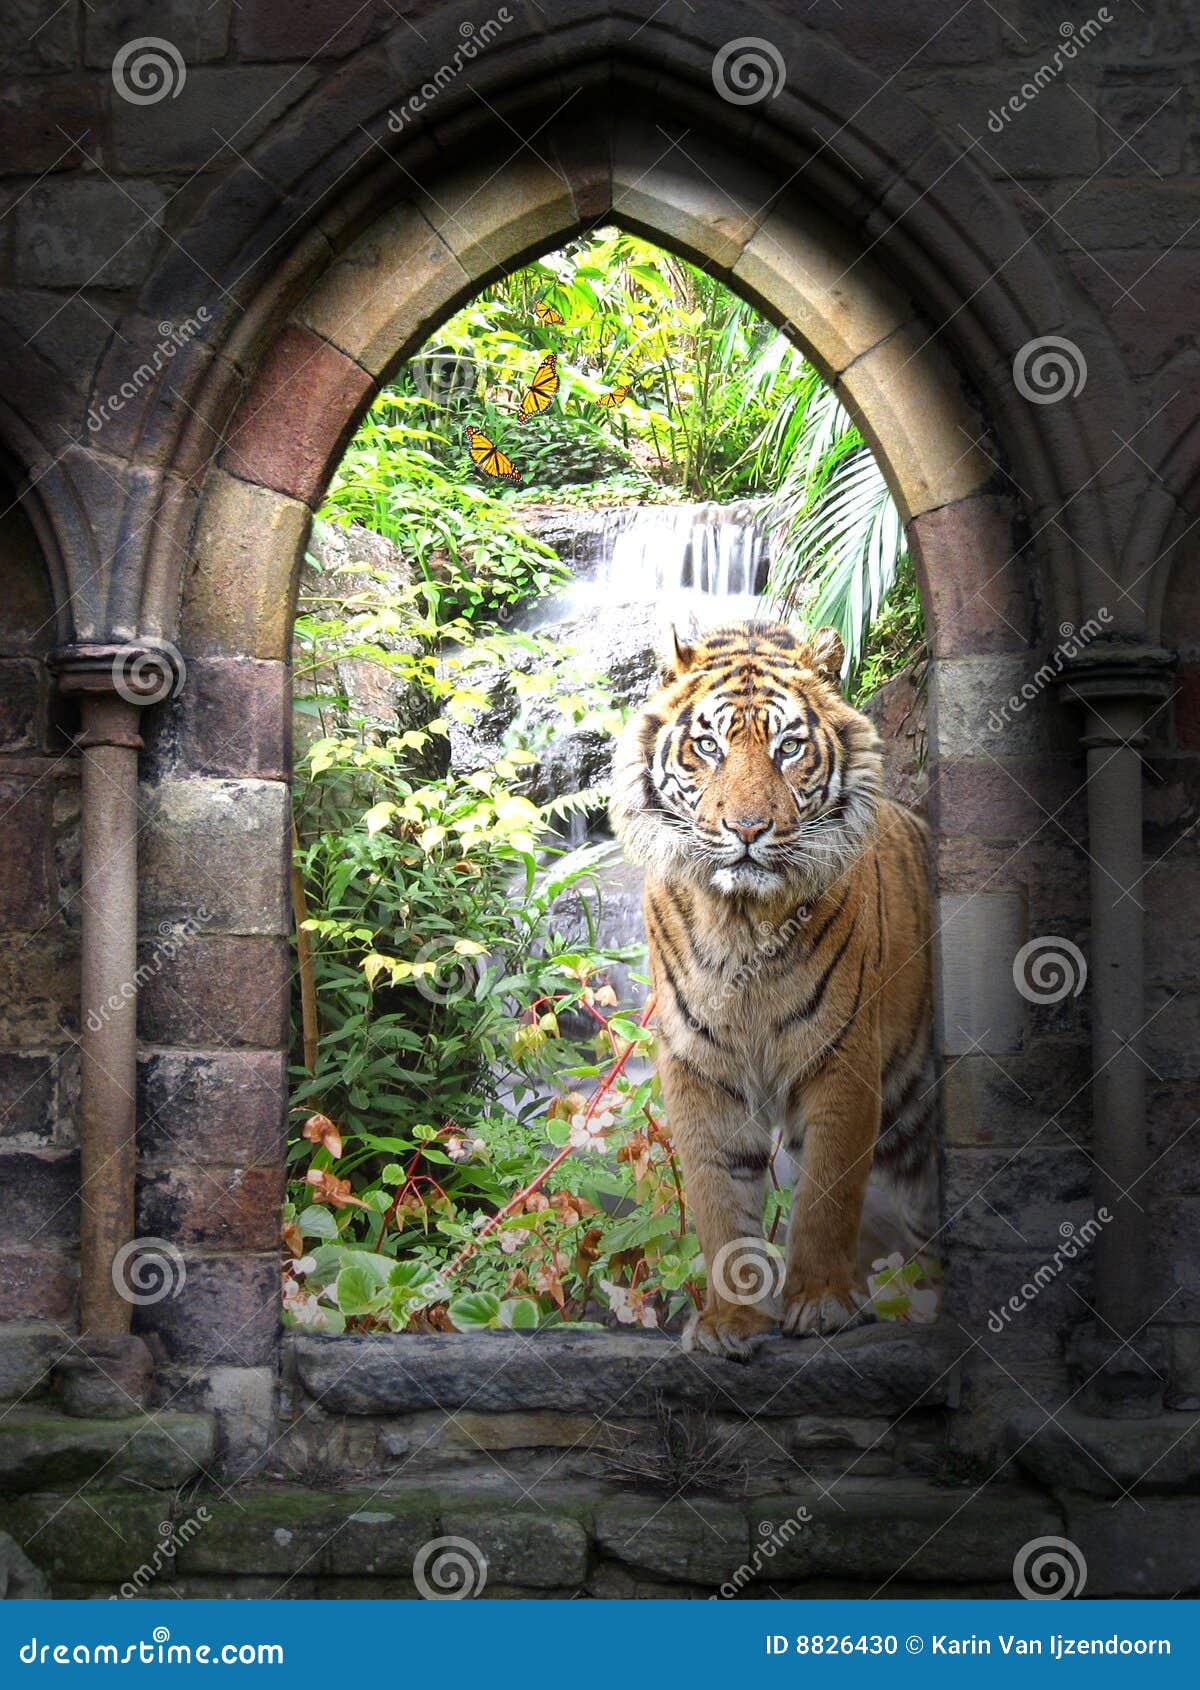 jungle gateway